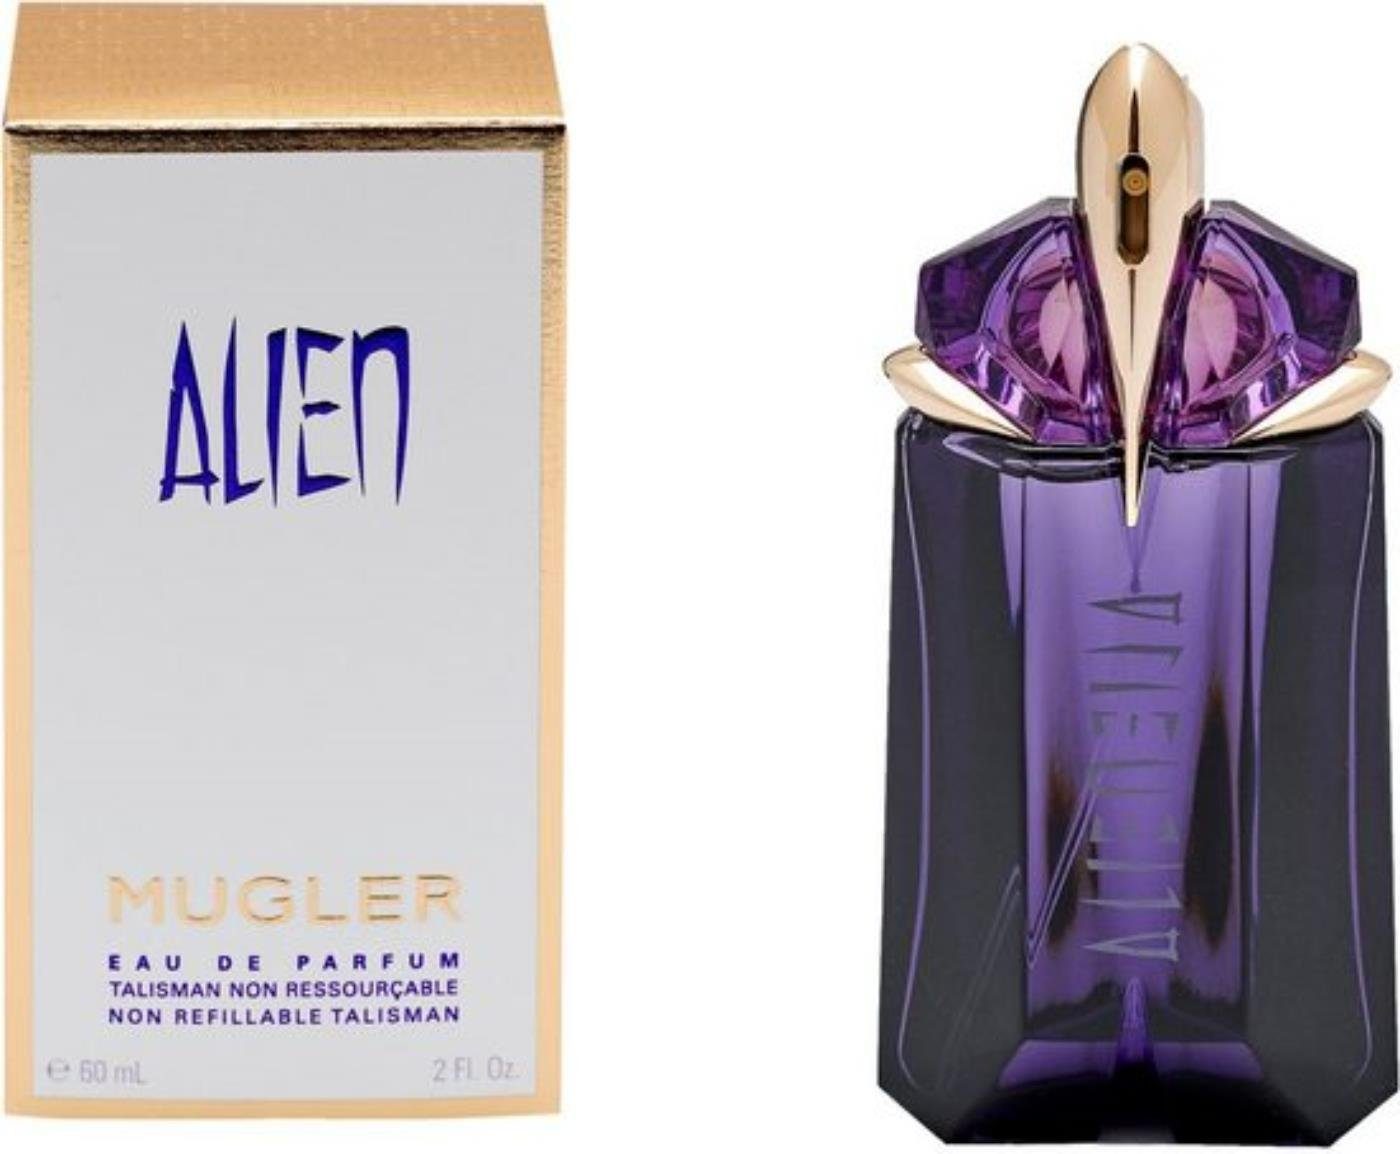 Mugler Eau de Parfum MUGLER Alien Refillable Eau de Parfum 15 ml